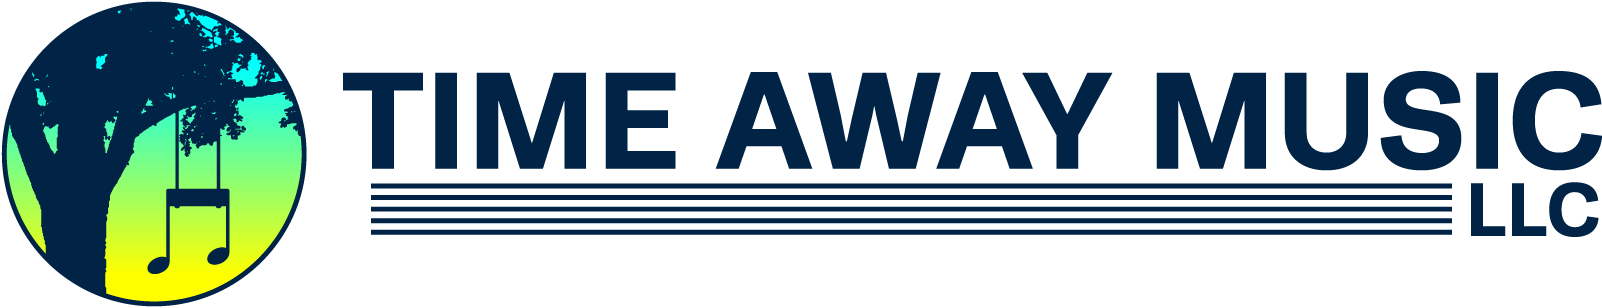 Time Away Music logo